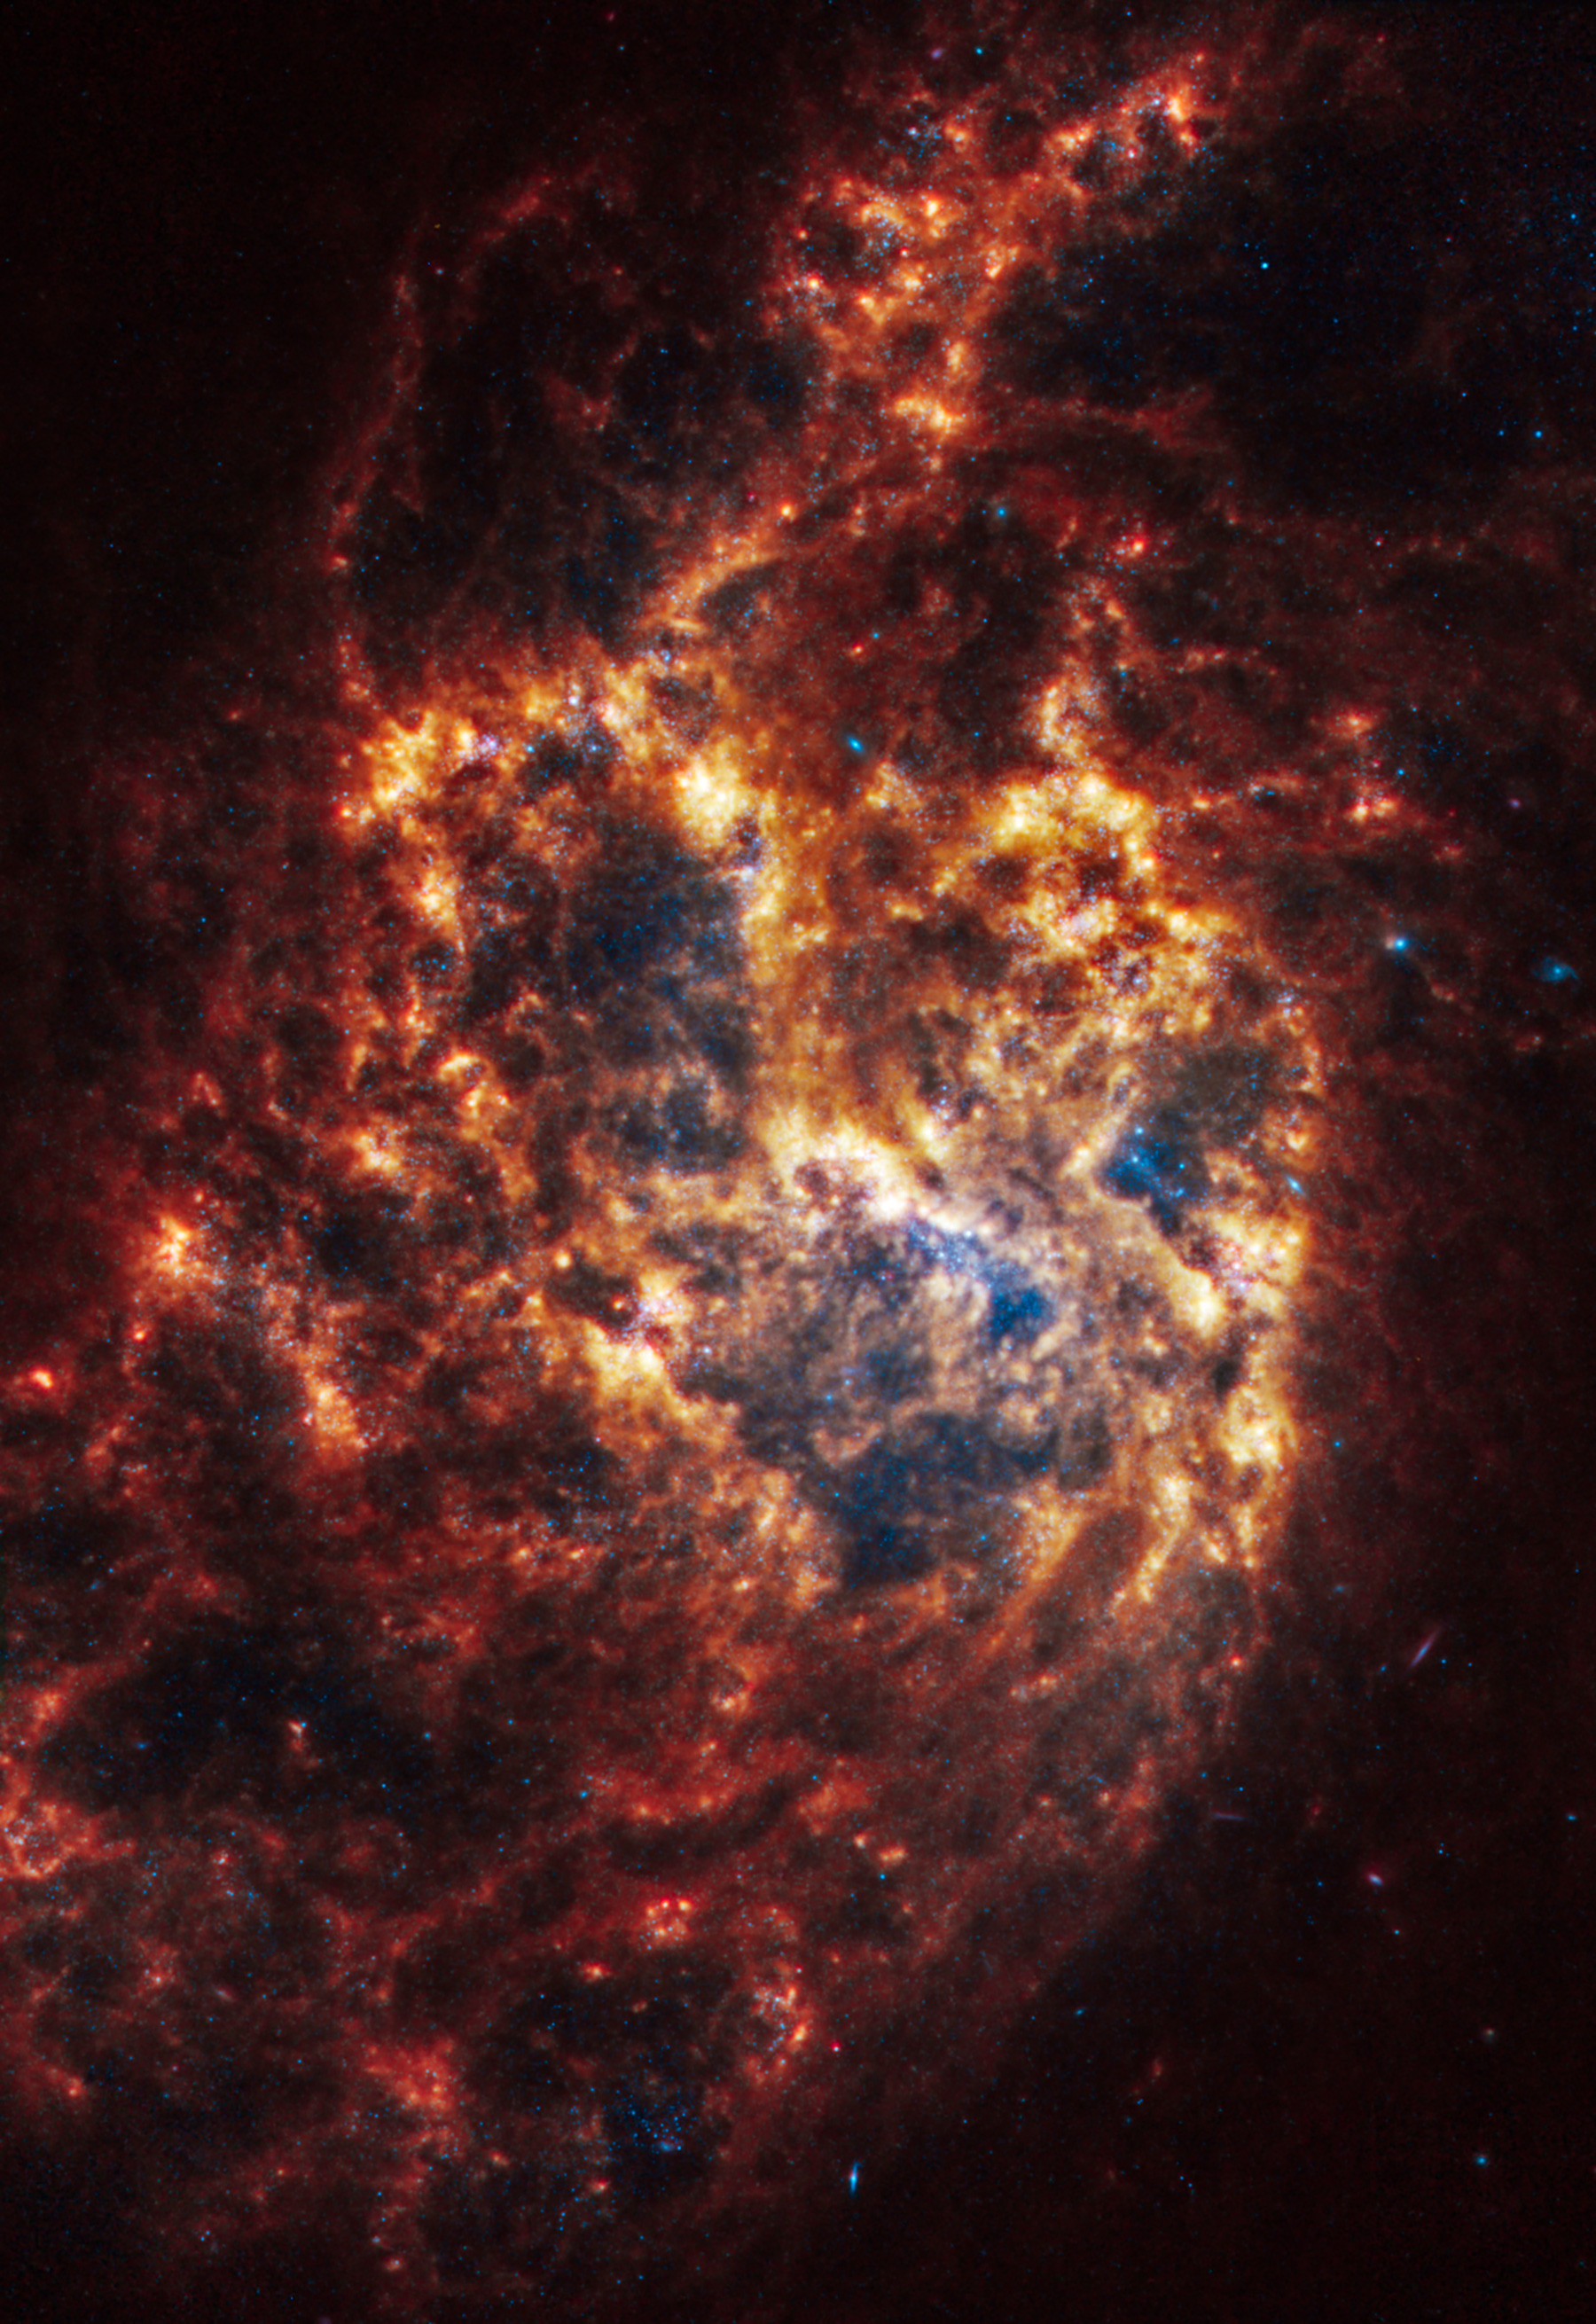 Галактика NGC 1385, расположенная в 30 млн световых лет в созвездии Печь